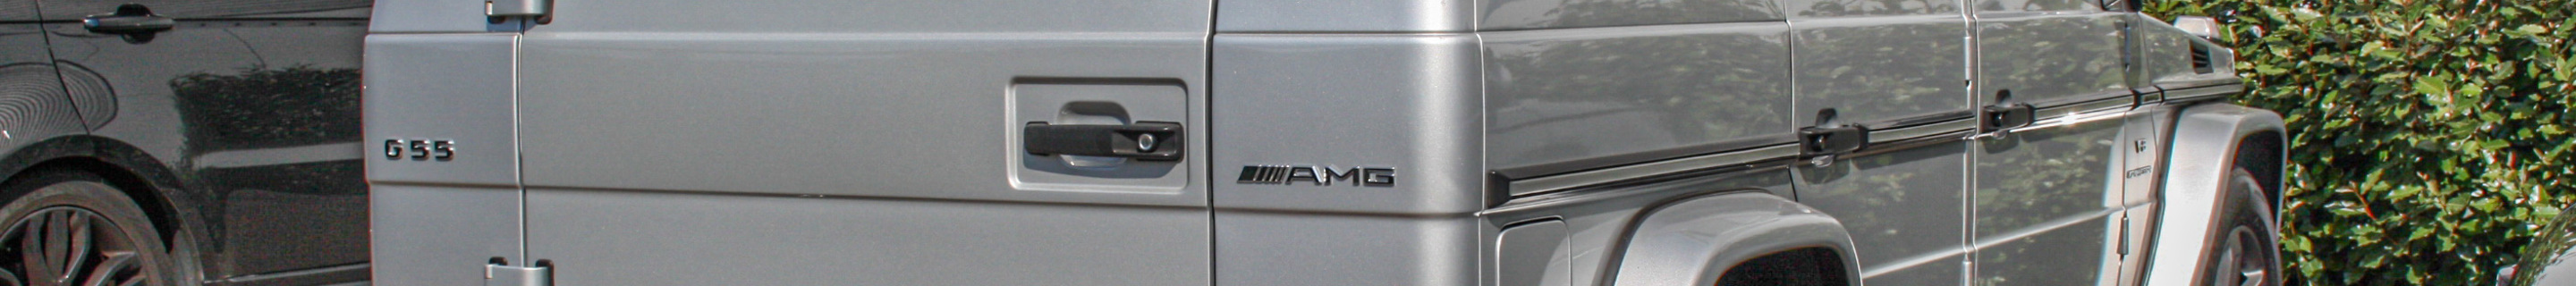 Mercedes-Benz G 55 AMG Kompressor 2005